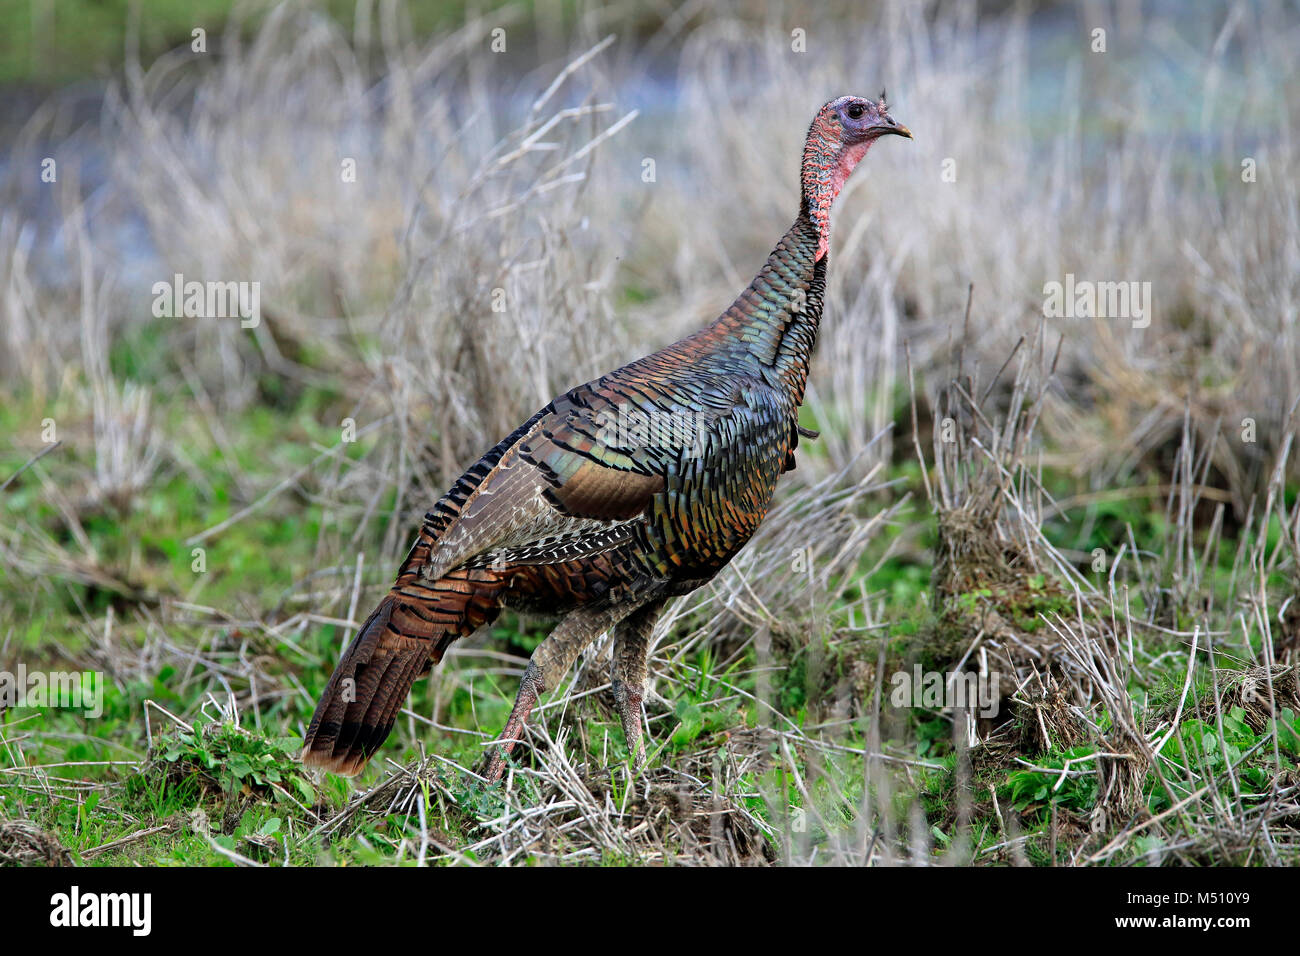 Florida wild turkey bird Stock Photo